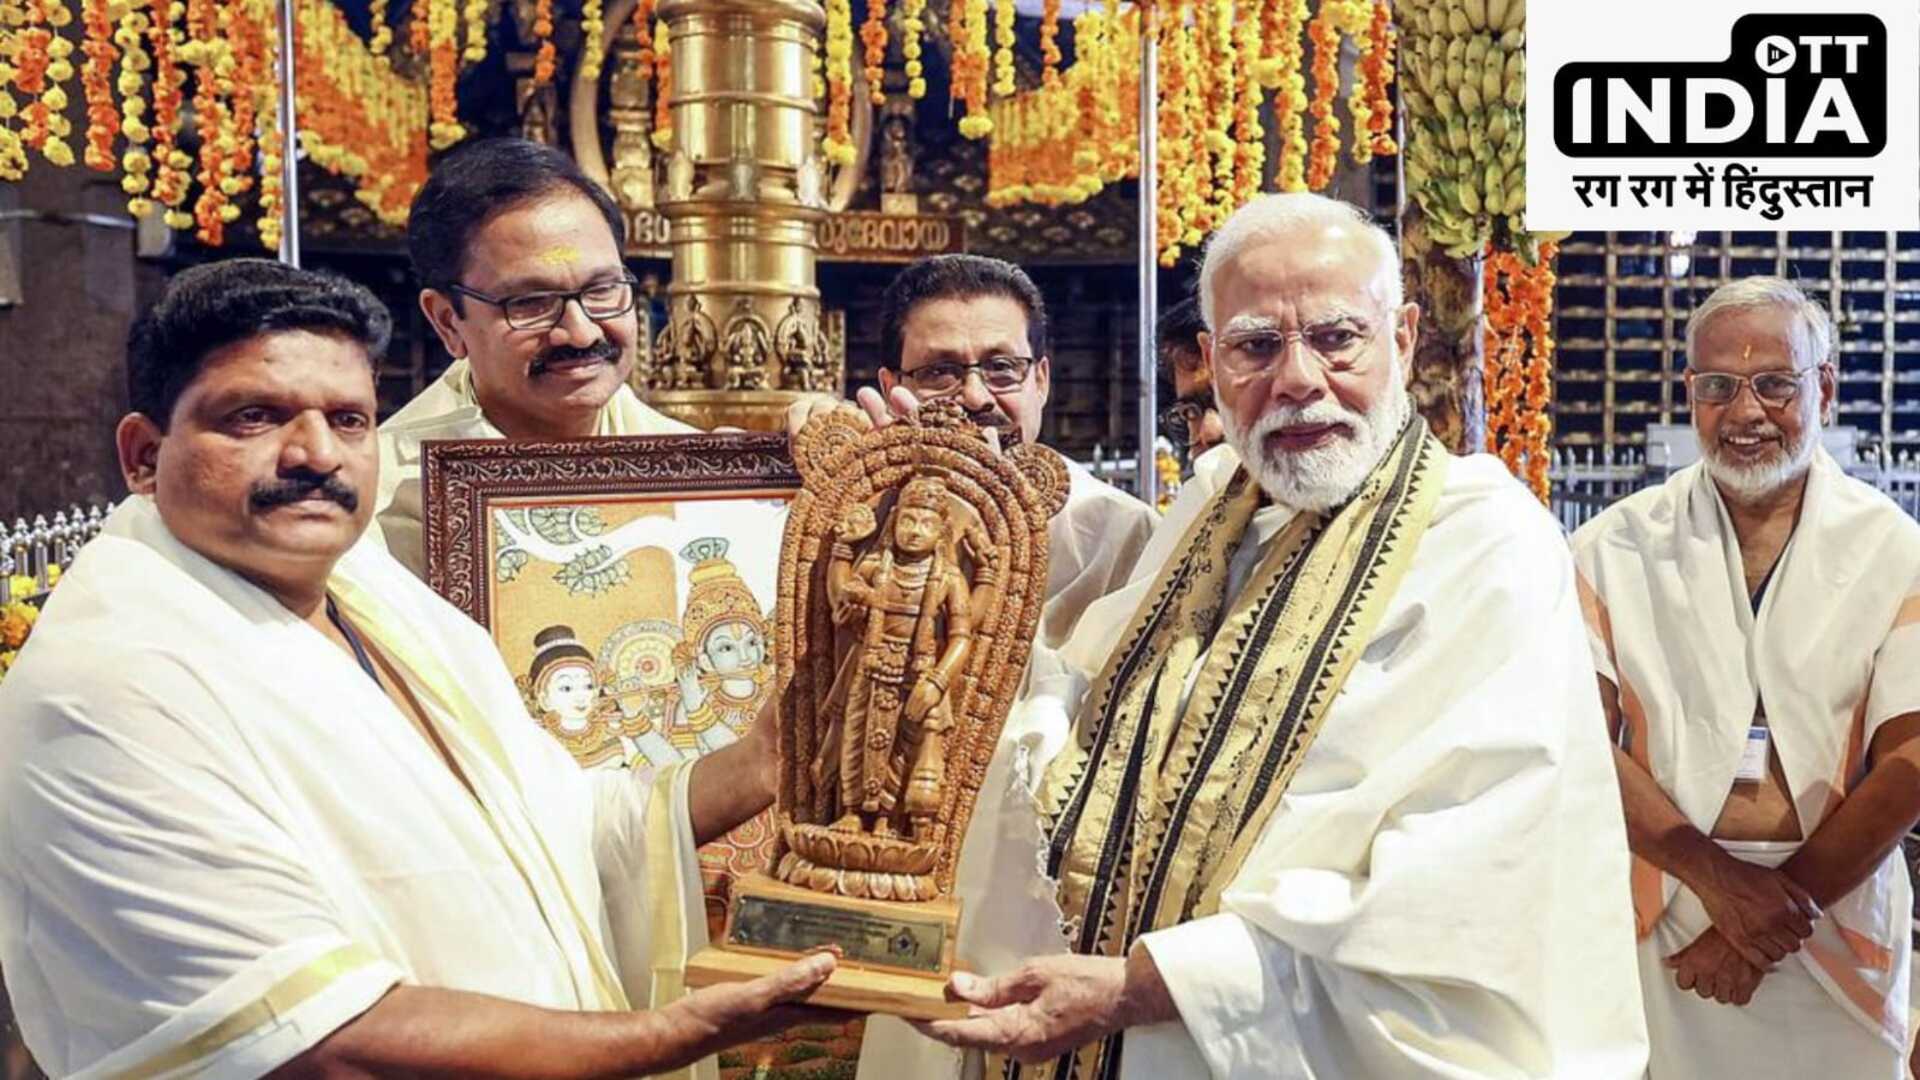 PM Modi Kerala Visit: केरल के दो दिवसीय दौरे पर पीएम मोदी, गुरुवायूर मंदिर में पूजा-अर्चना के बाद परियोजनाओं की दी सौगात